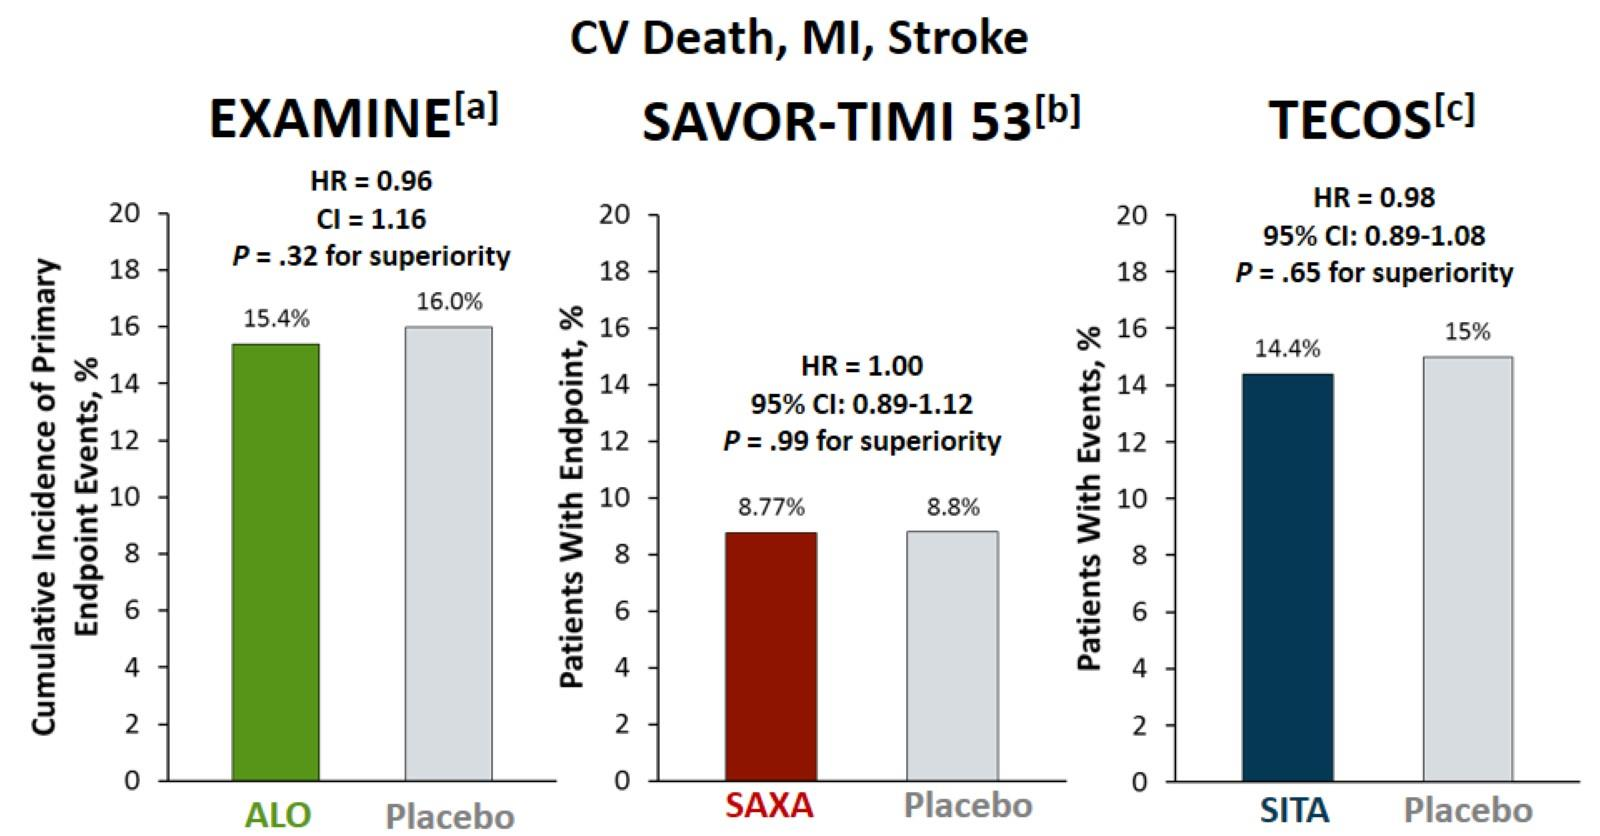 DPP4i. Κύρια καταληκτικά σημεία των μελετών καρδιαγγειακς ασφάλειας Έδειξαν μη κατωτερότητα όχι ανωτερότητα White WB, et al.